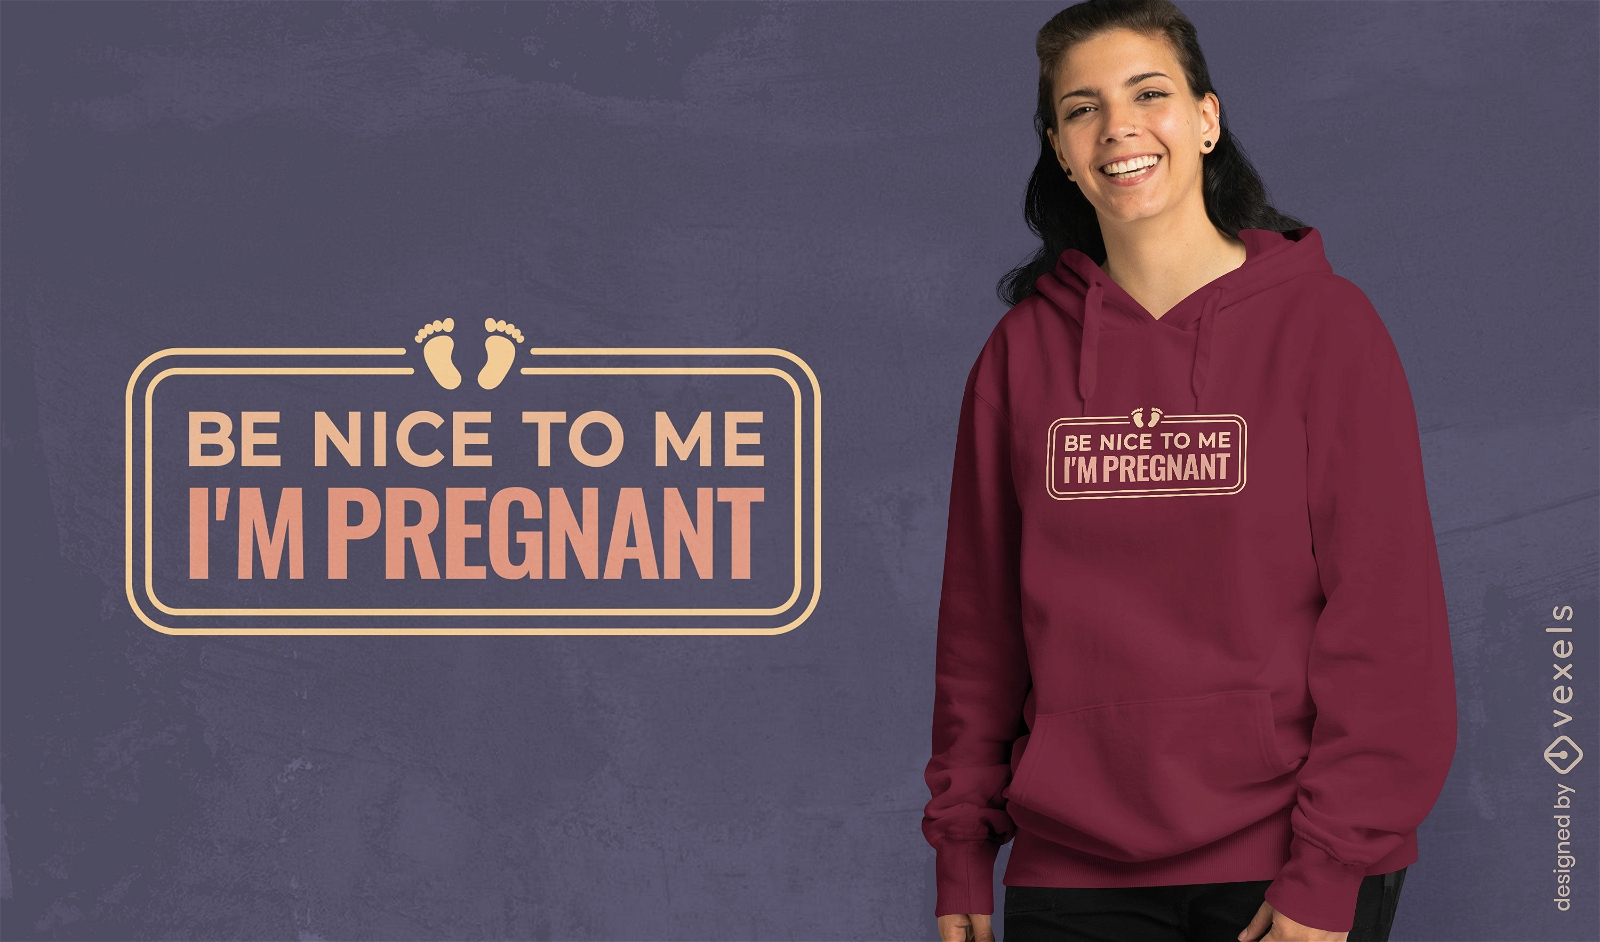 Dise?o de camiseta amigable para el embarazo.